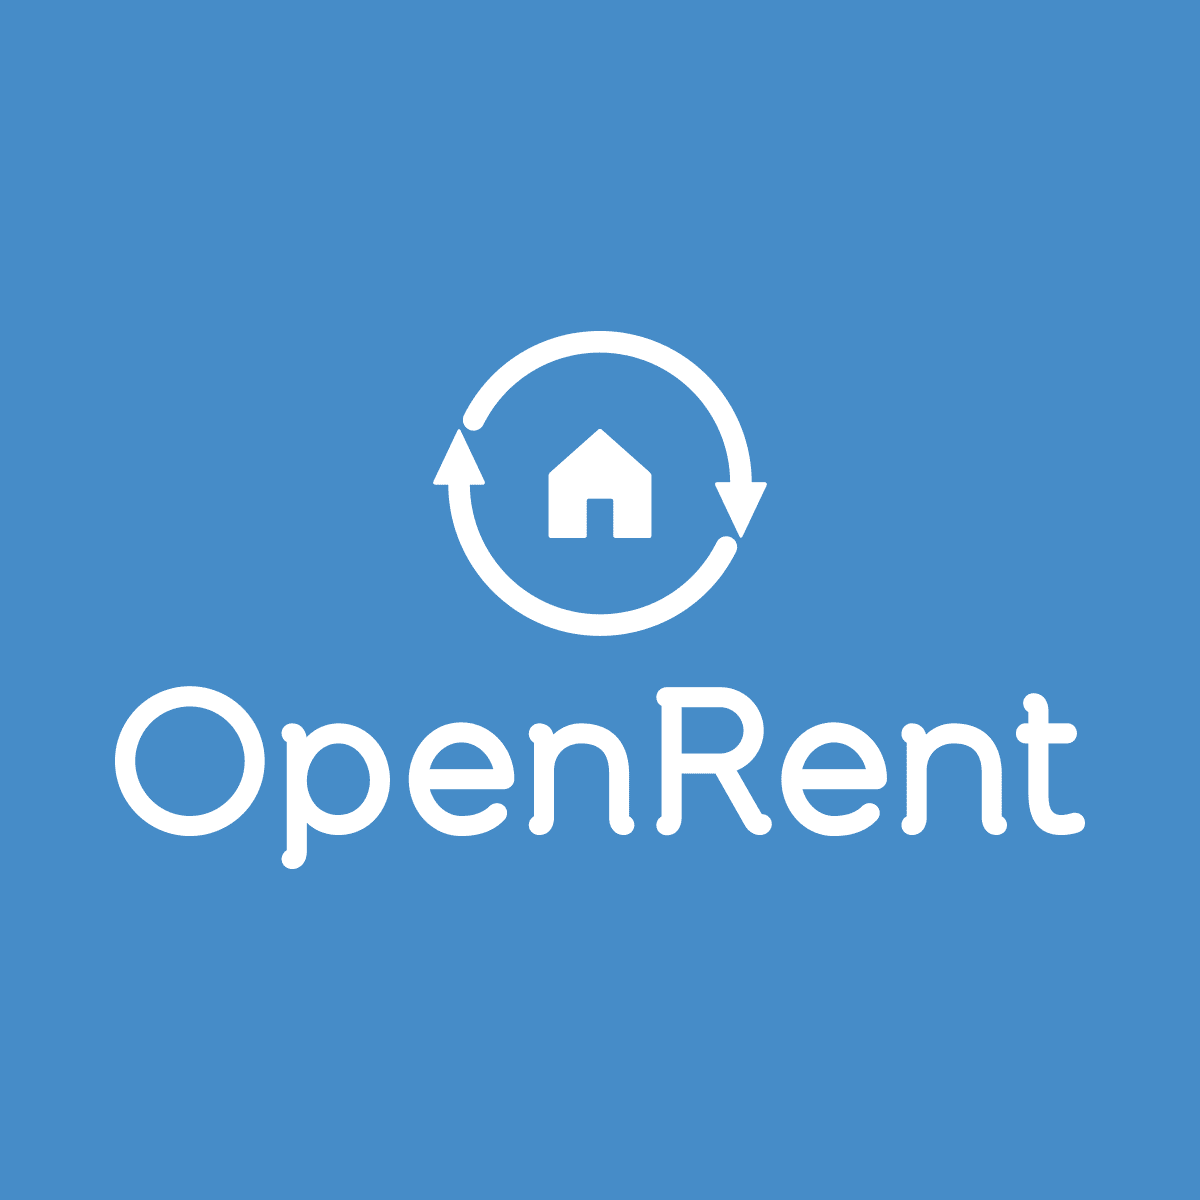 Open Rent